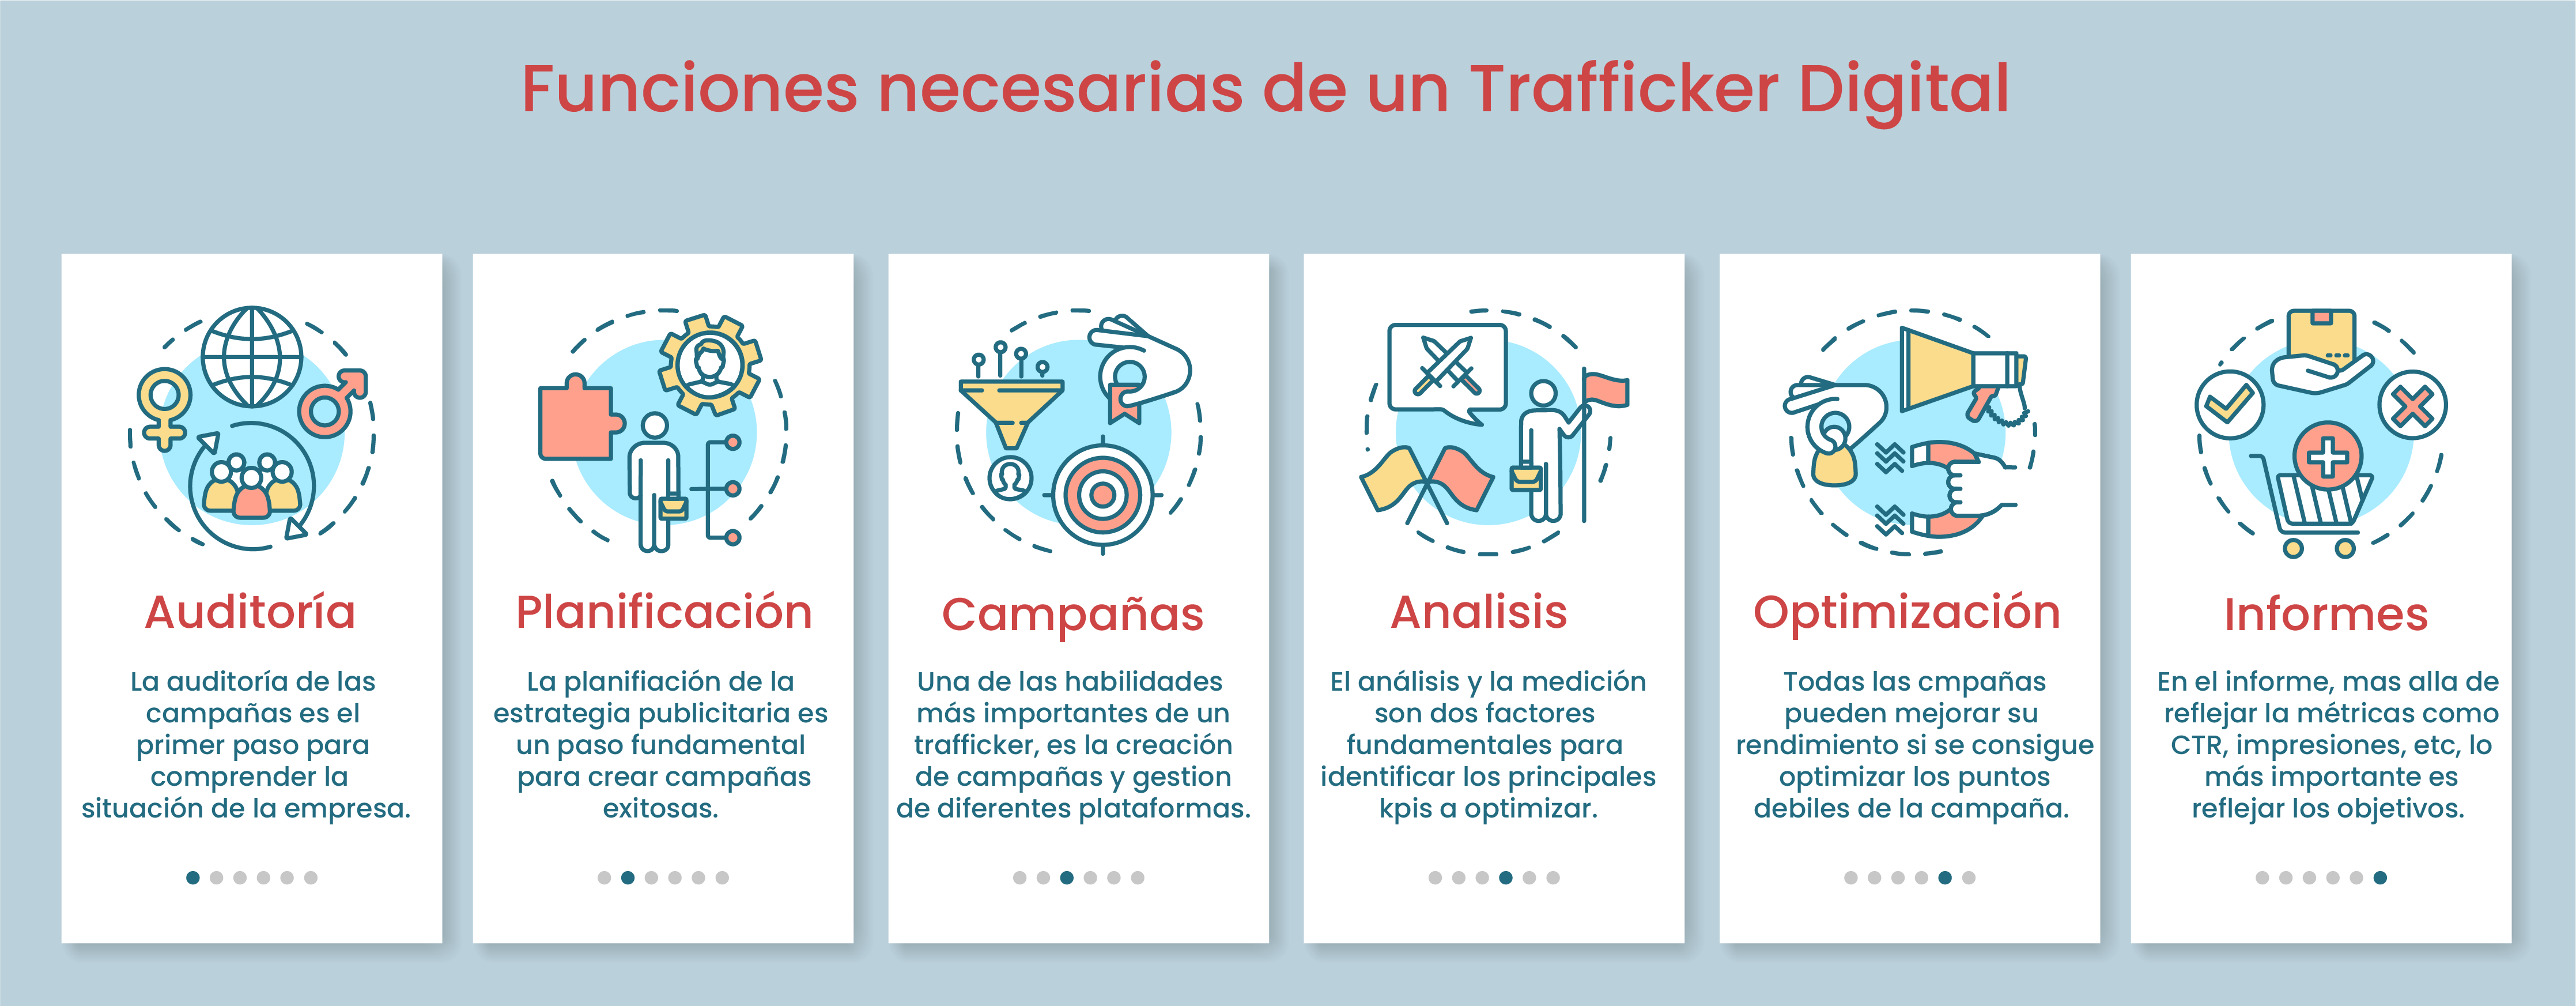 Funciones de un Trafficker Digital